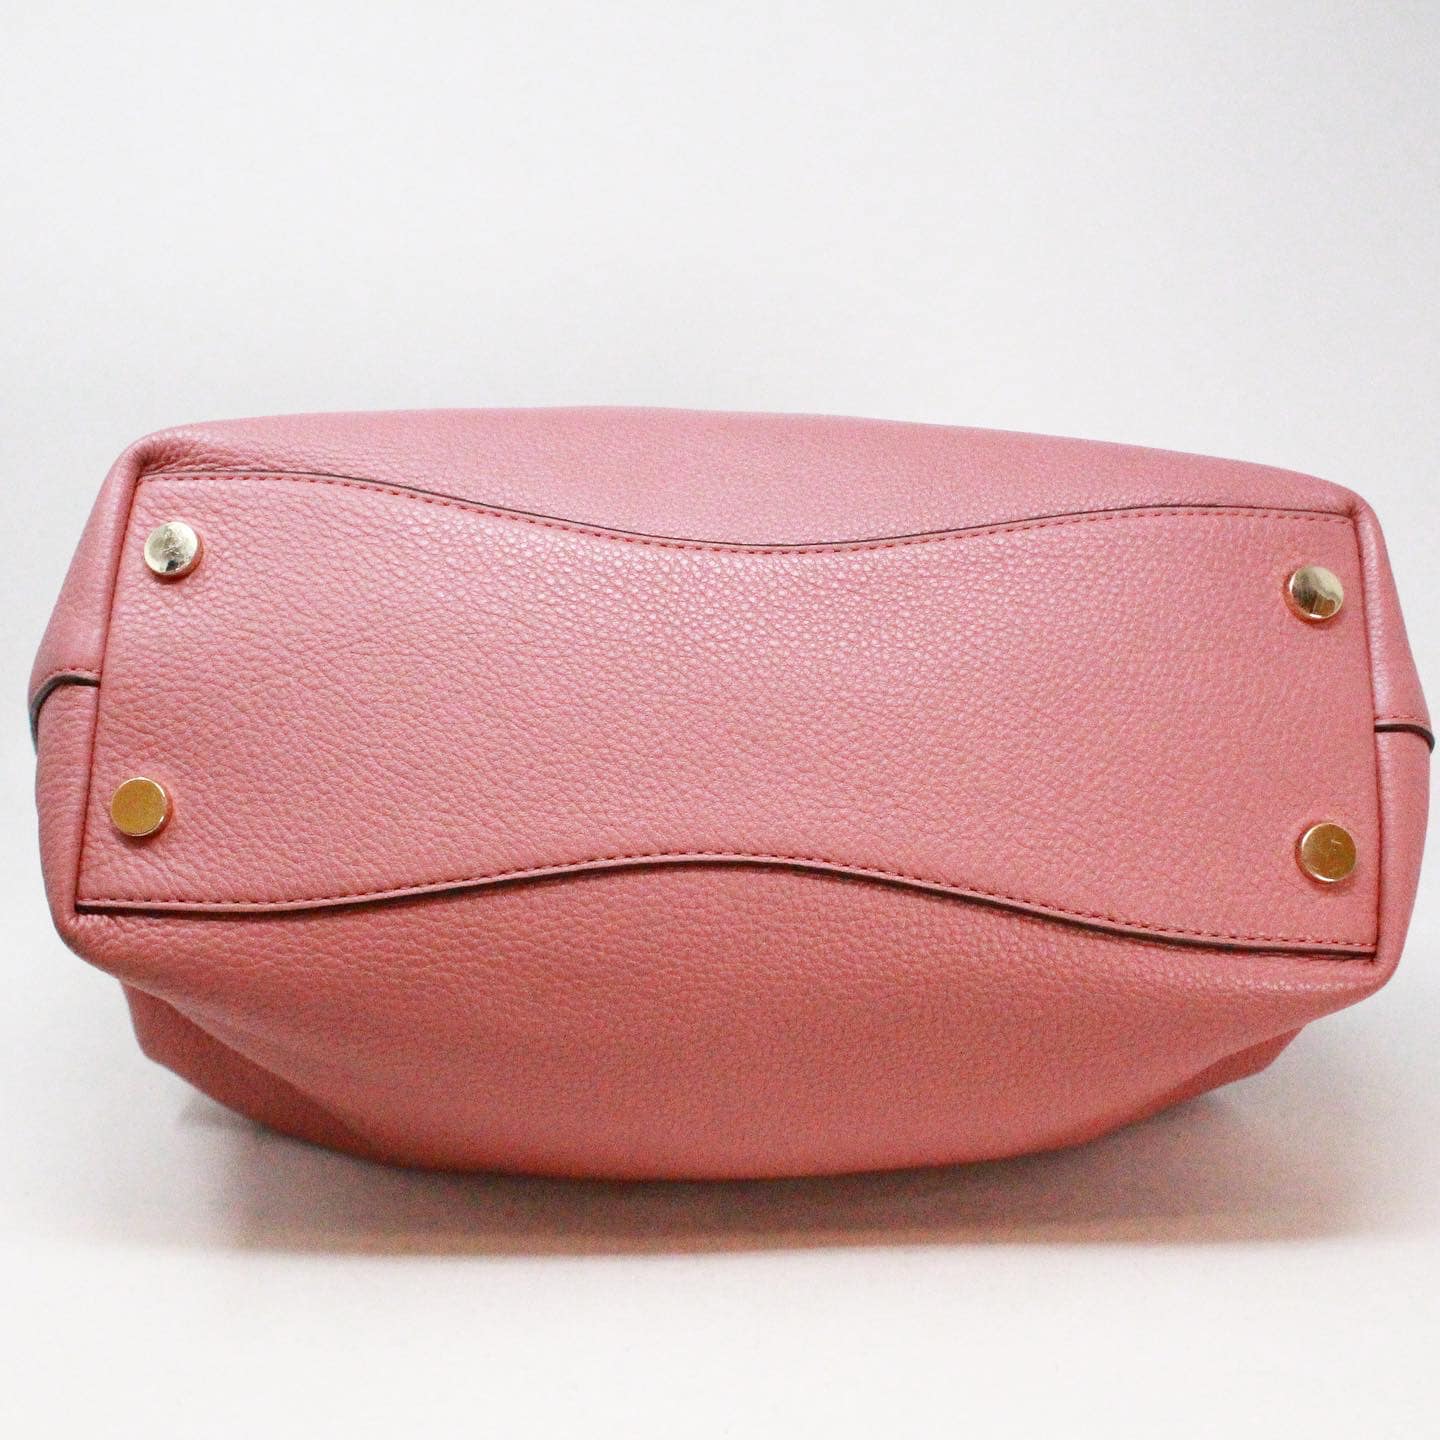 Michael Kors Raven Large Leather Shoulder Bag - Soft Pink